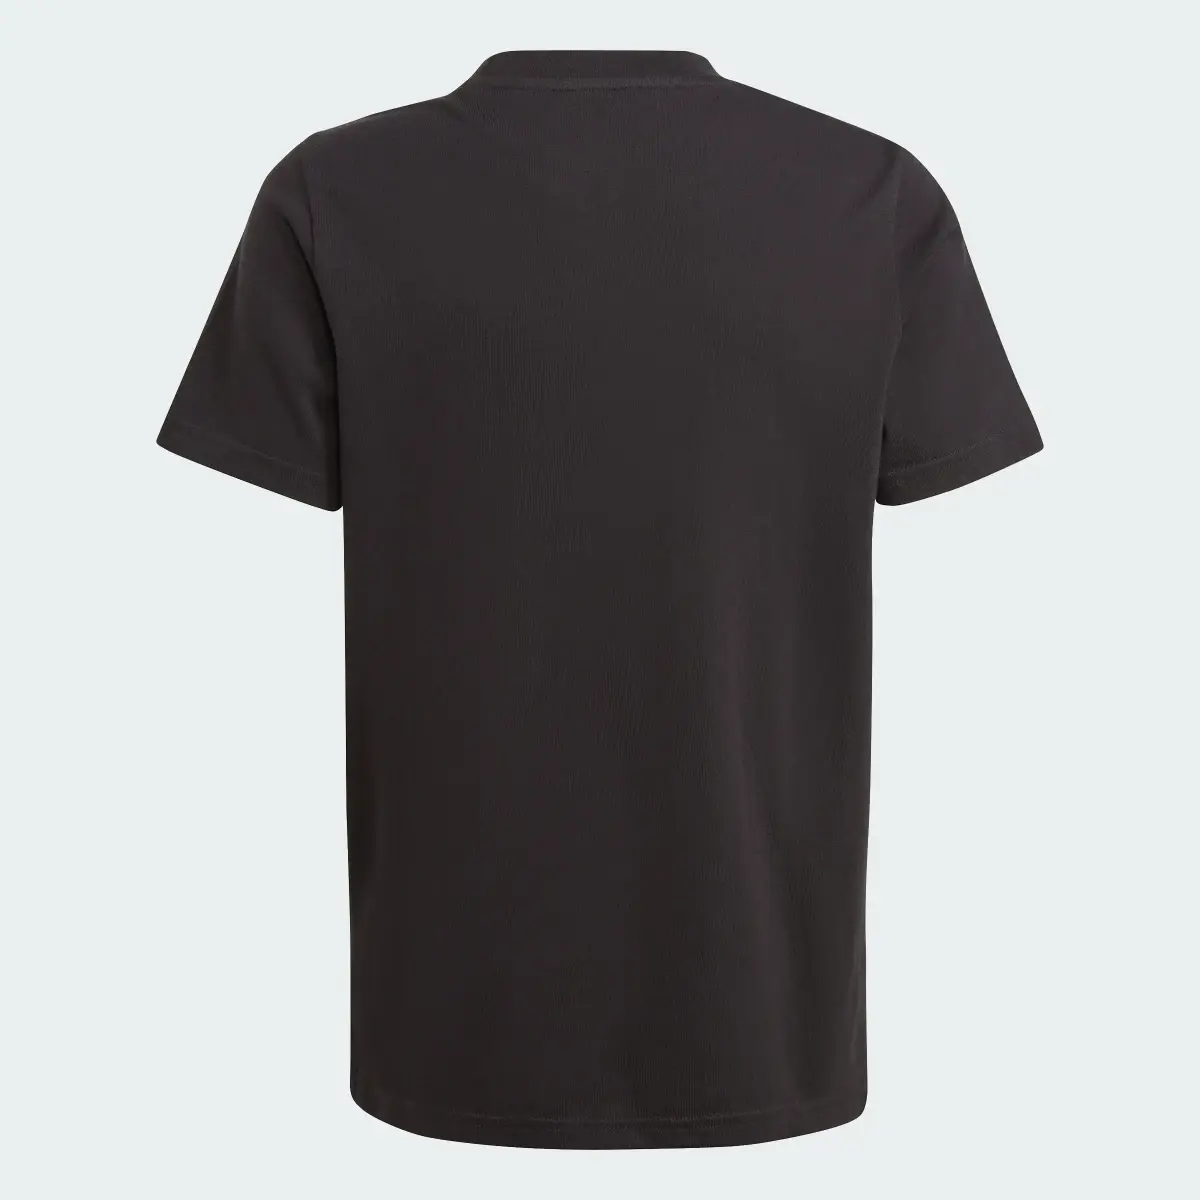 Adidas T-shirt graphique All Blacks. 2